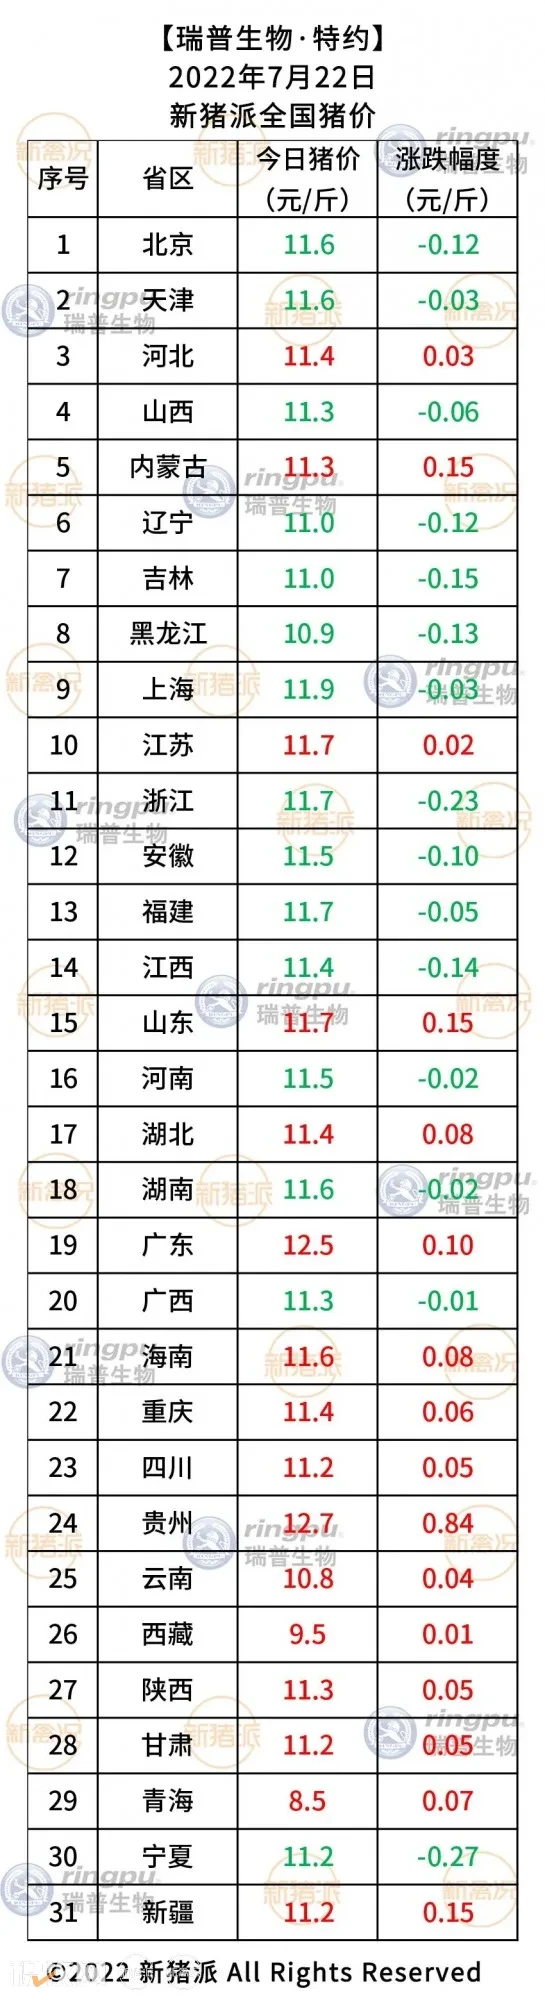 月22日：贵州、广东涨至12.5元/斤以上【瑞普生物·猪价指数】"